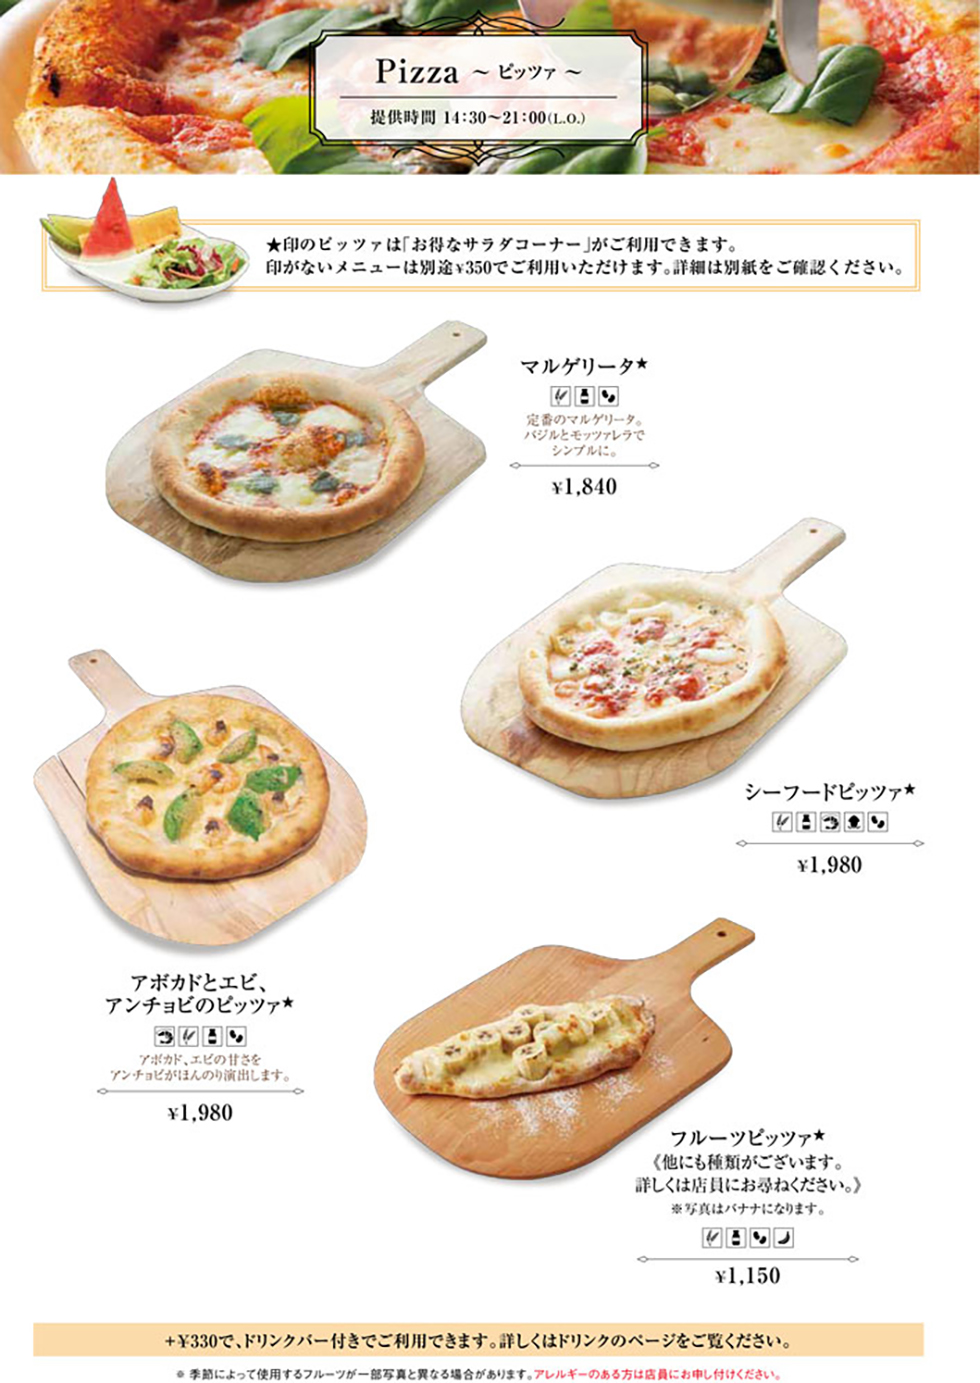 原宿店の食事メニュー定番ピザ